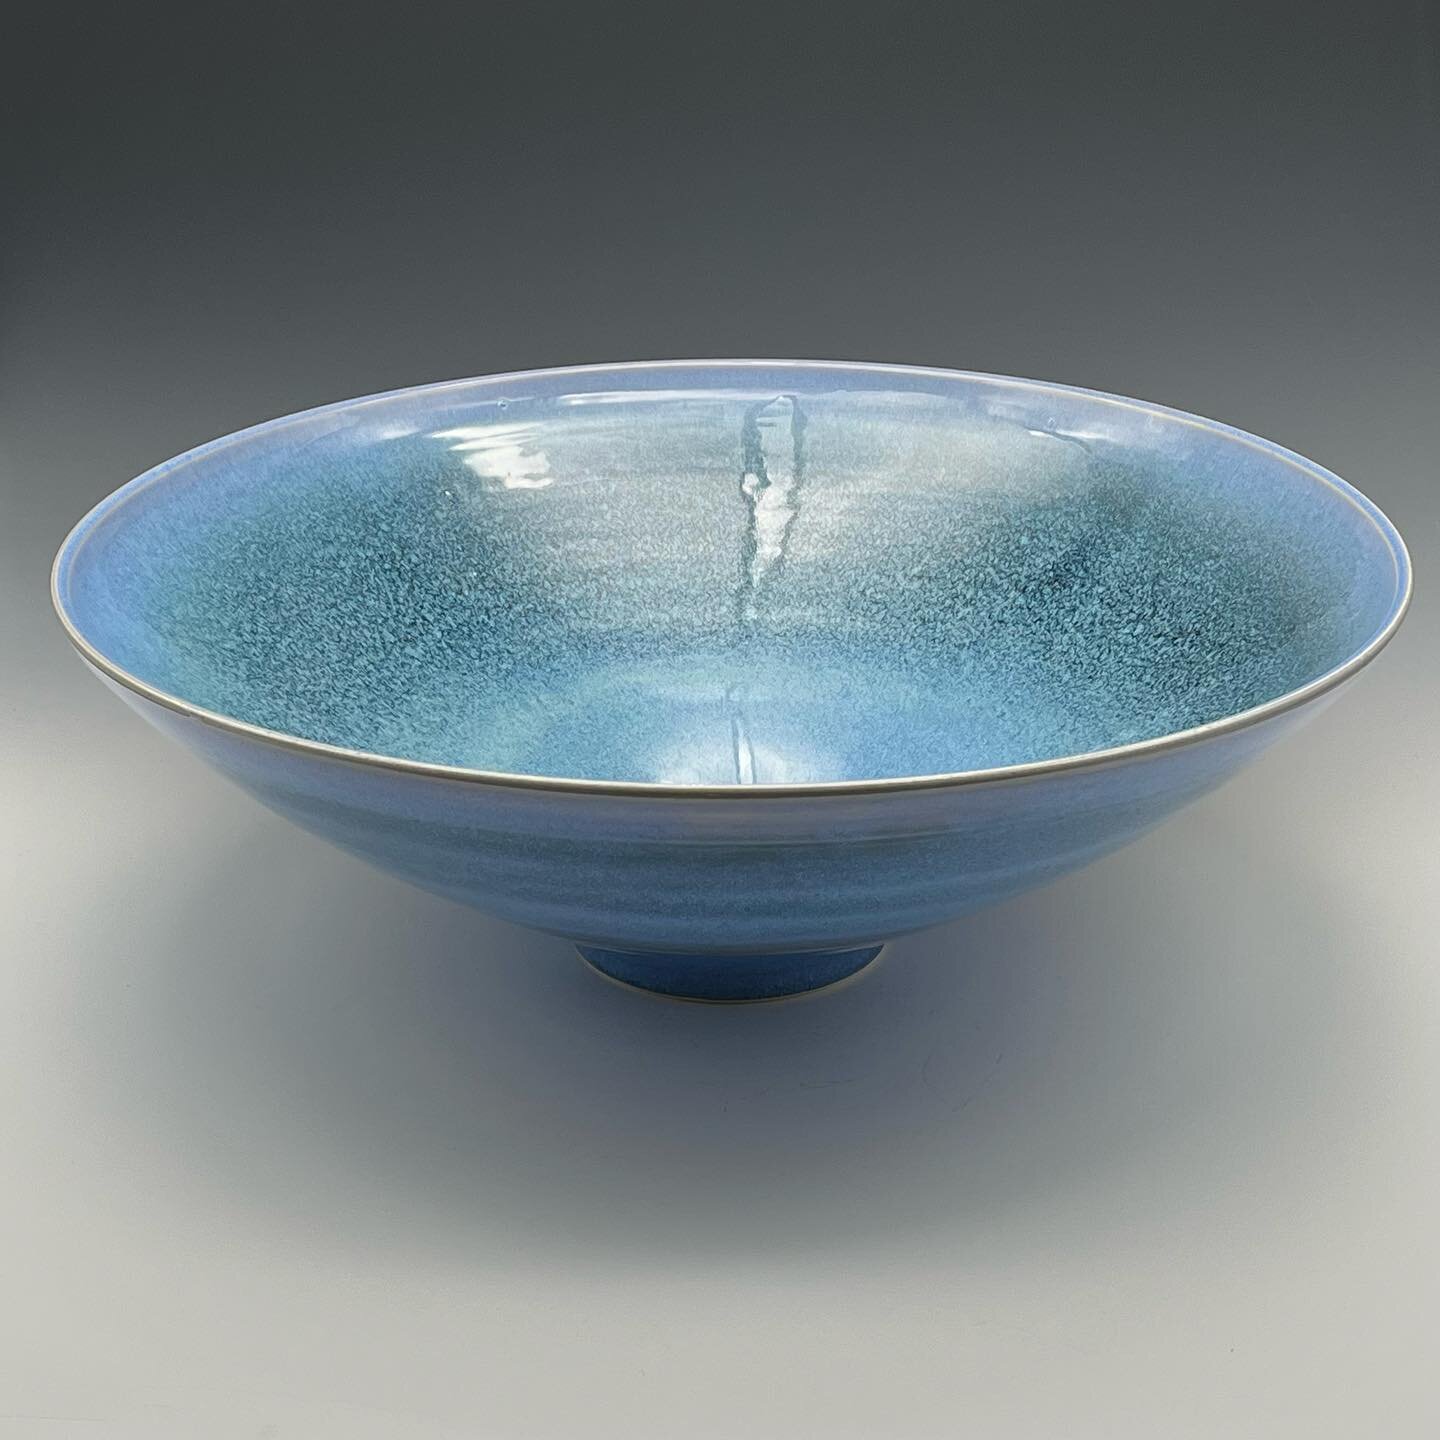 Large wheel thrown porcelain bowl 16&rdquo; in diameter.